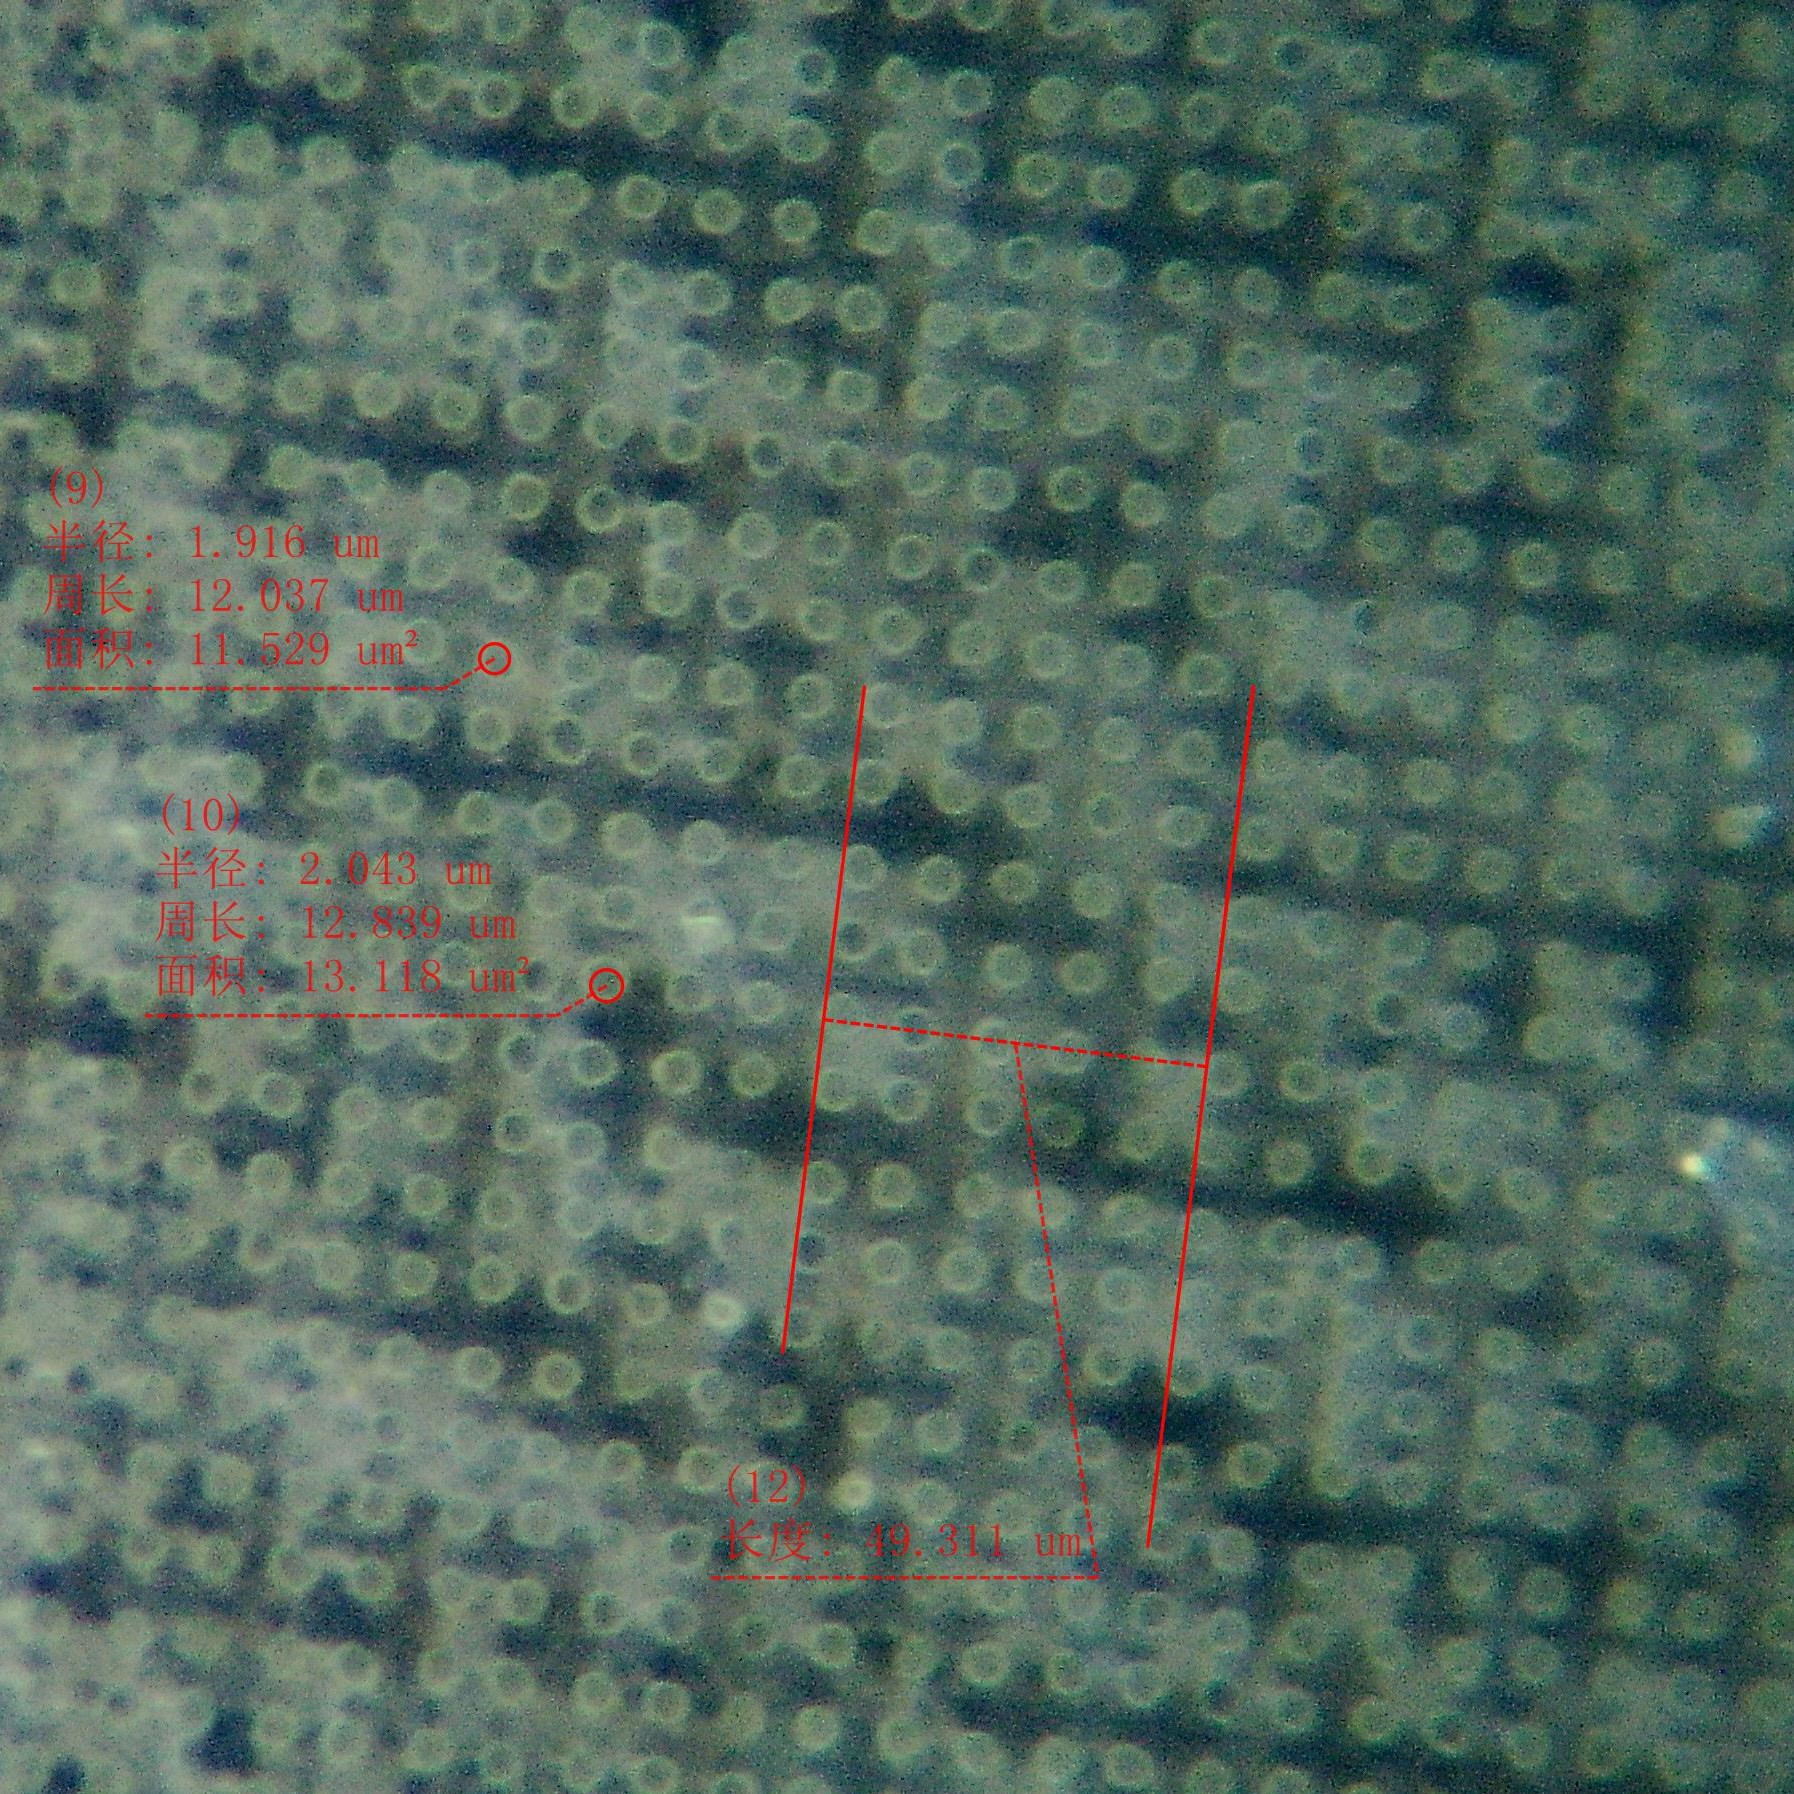 薄膜微孔加工4微米